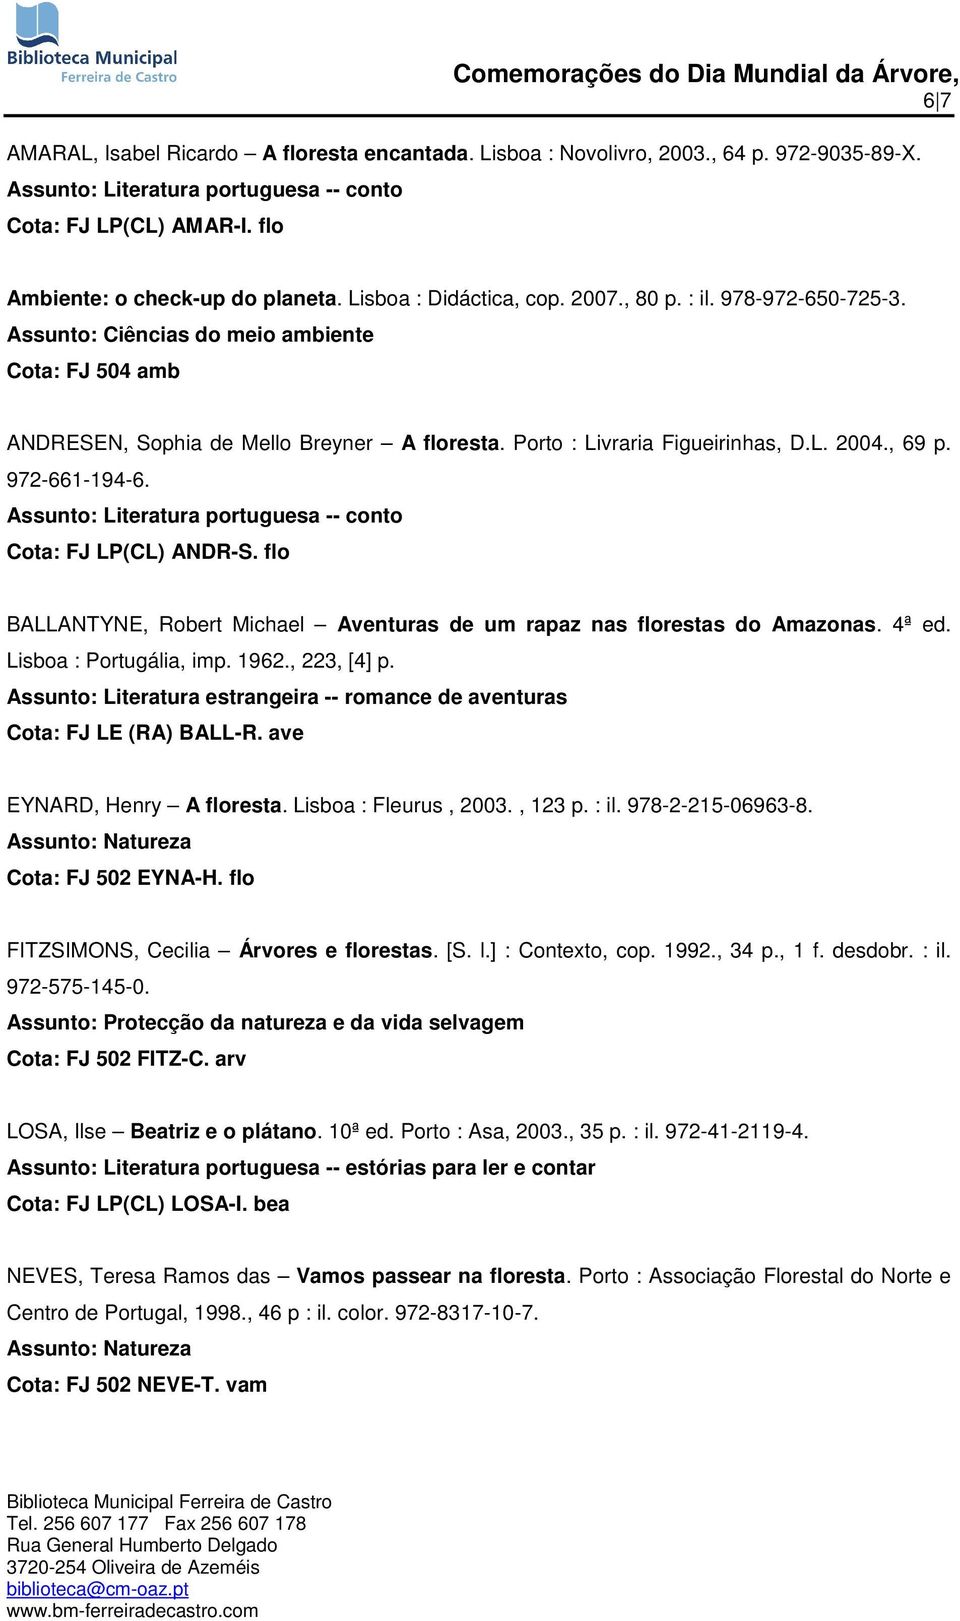 Assunto: Literatura portuguesa -- conto Cota: FJ LP(CL) ANDR-S. flo BALLANTYNE, Robert Michael Aventuras de um rapaz nas florestas do Amazonas. 4ª ed. Lisboa : Portugália, imp. 1962., 223, [4] p.